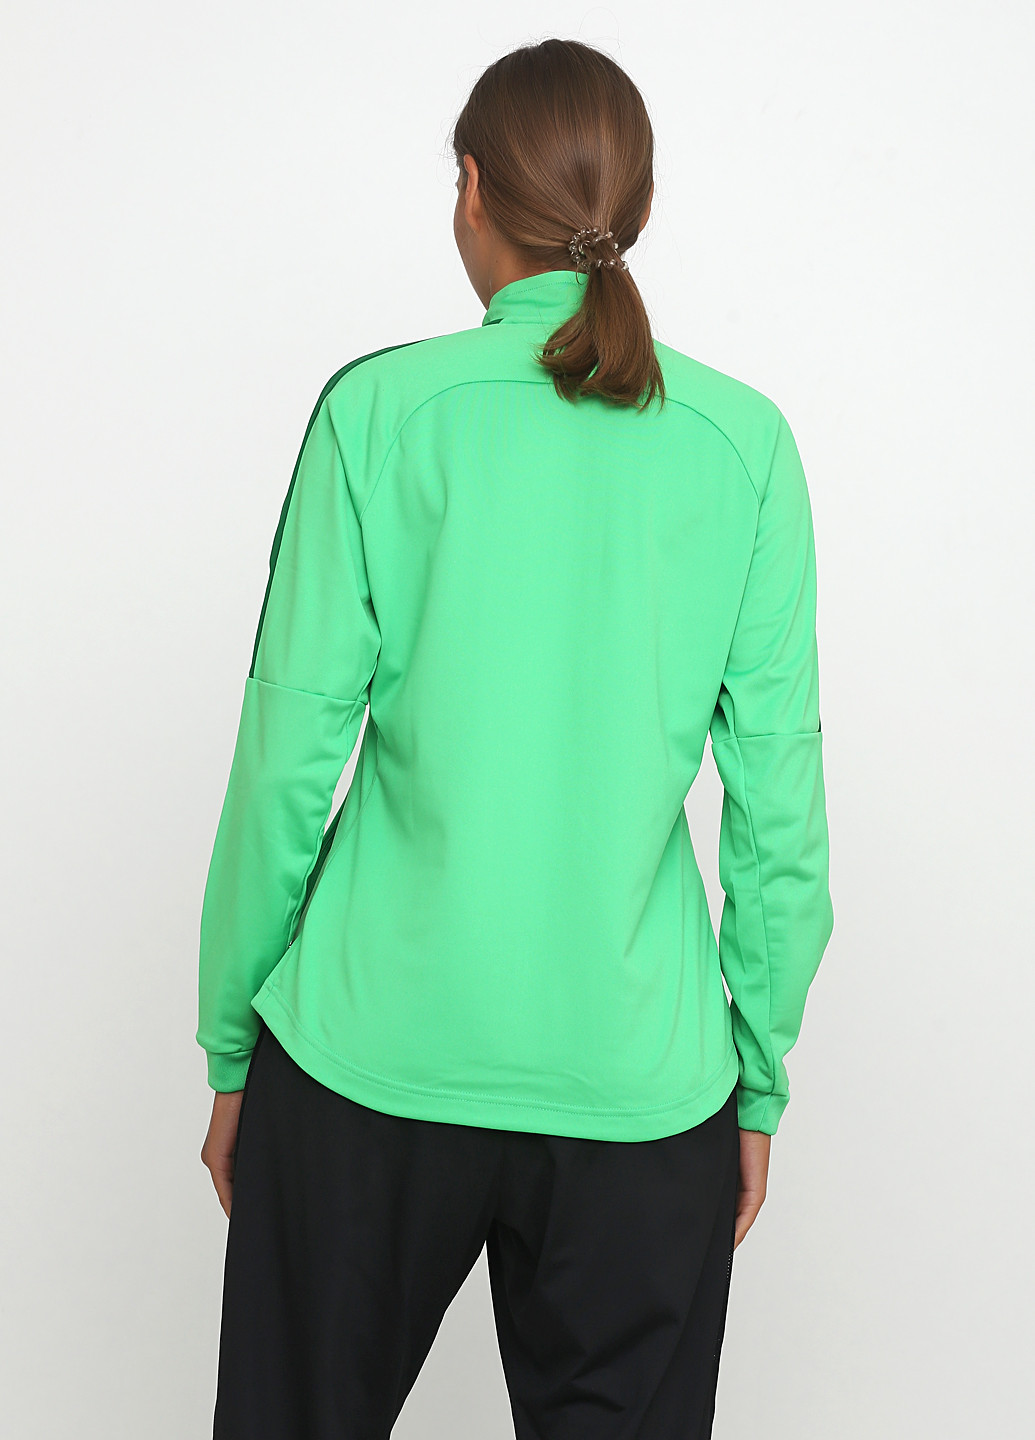 Олимпийка Nike knit track jacket w o m e n ’ s a c a d e m y 1 8 (187143756)